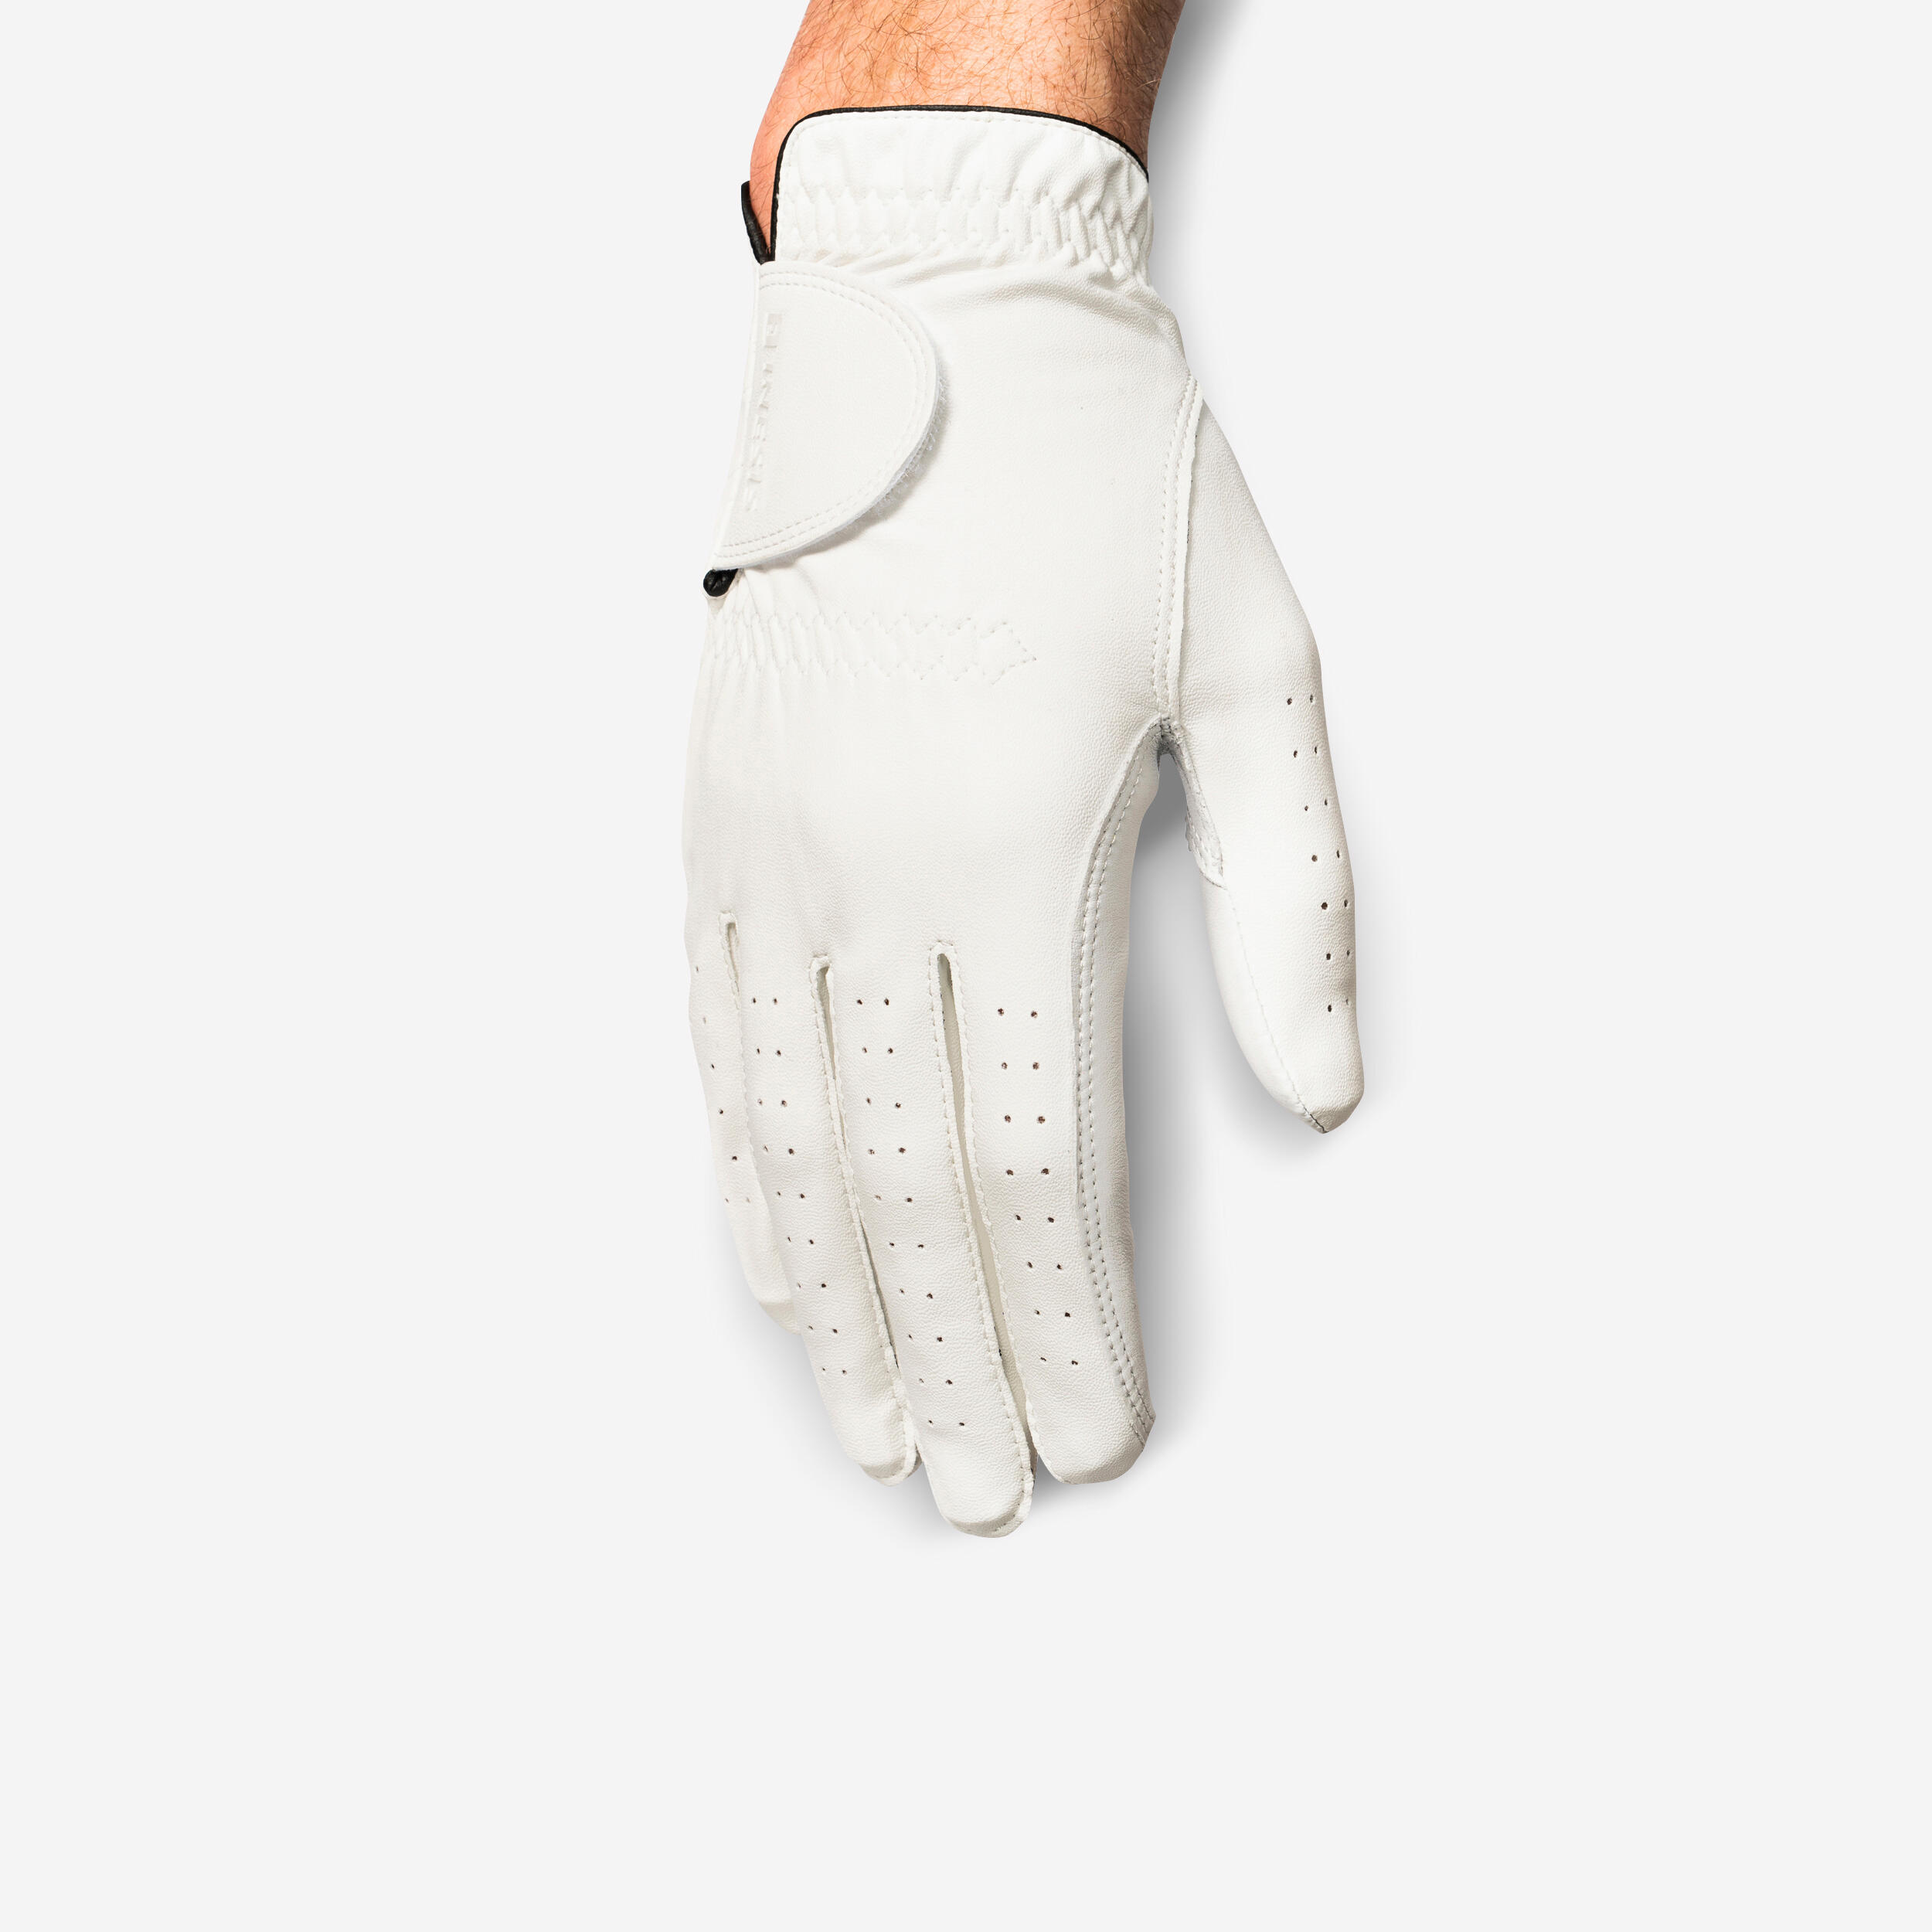 Men’s LH Golf Glove - Soft 500 White - INESIS